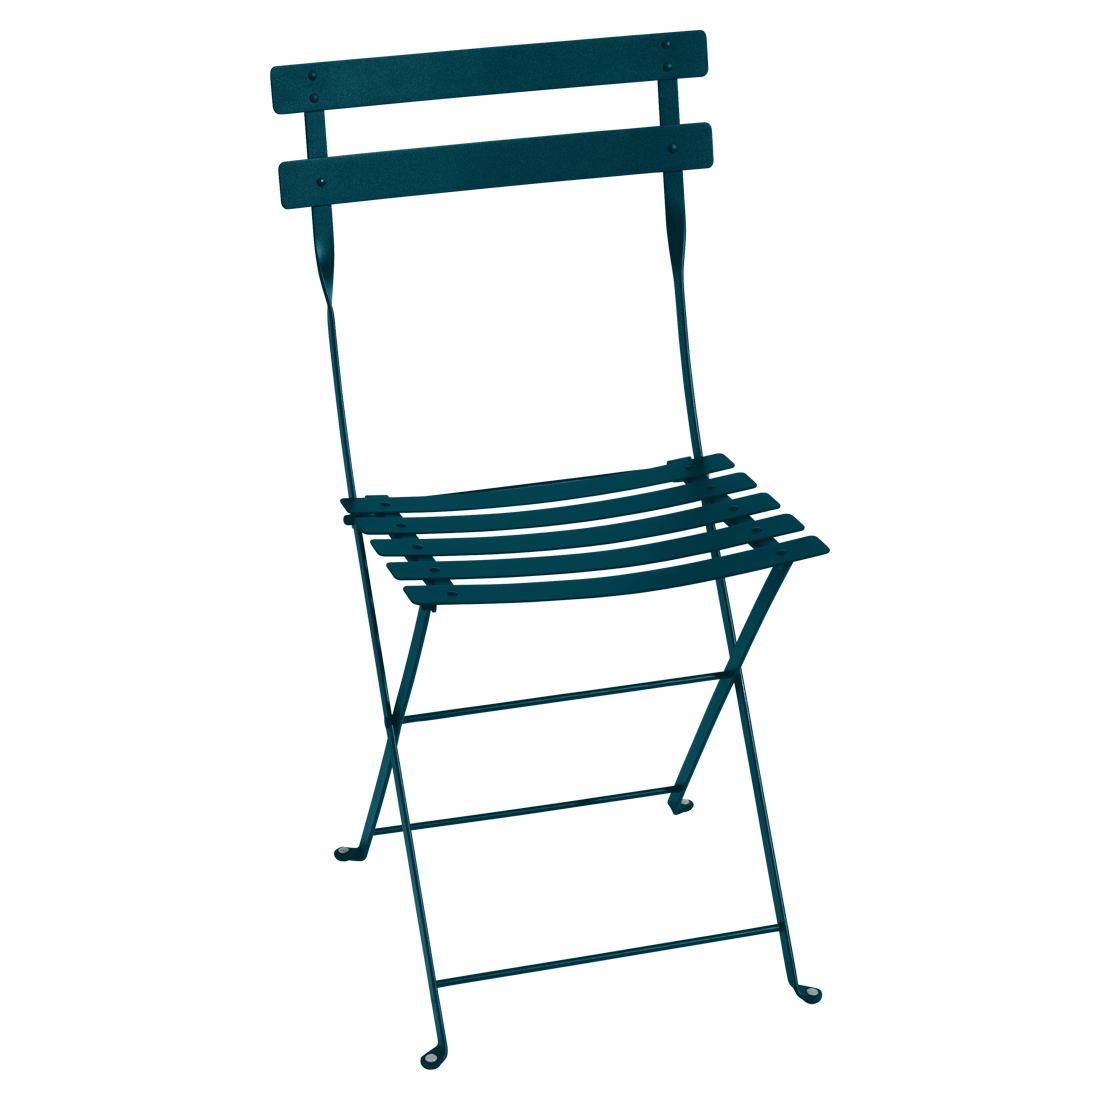 Modrá kovová skládací židle